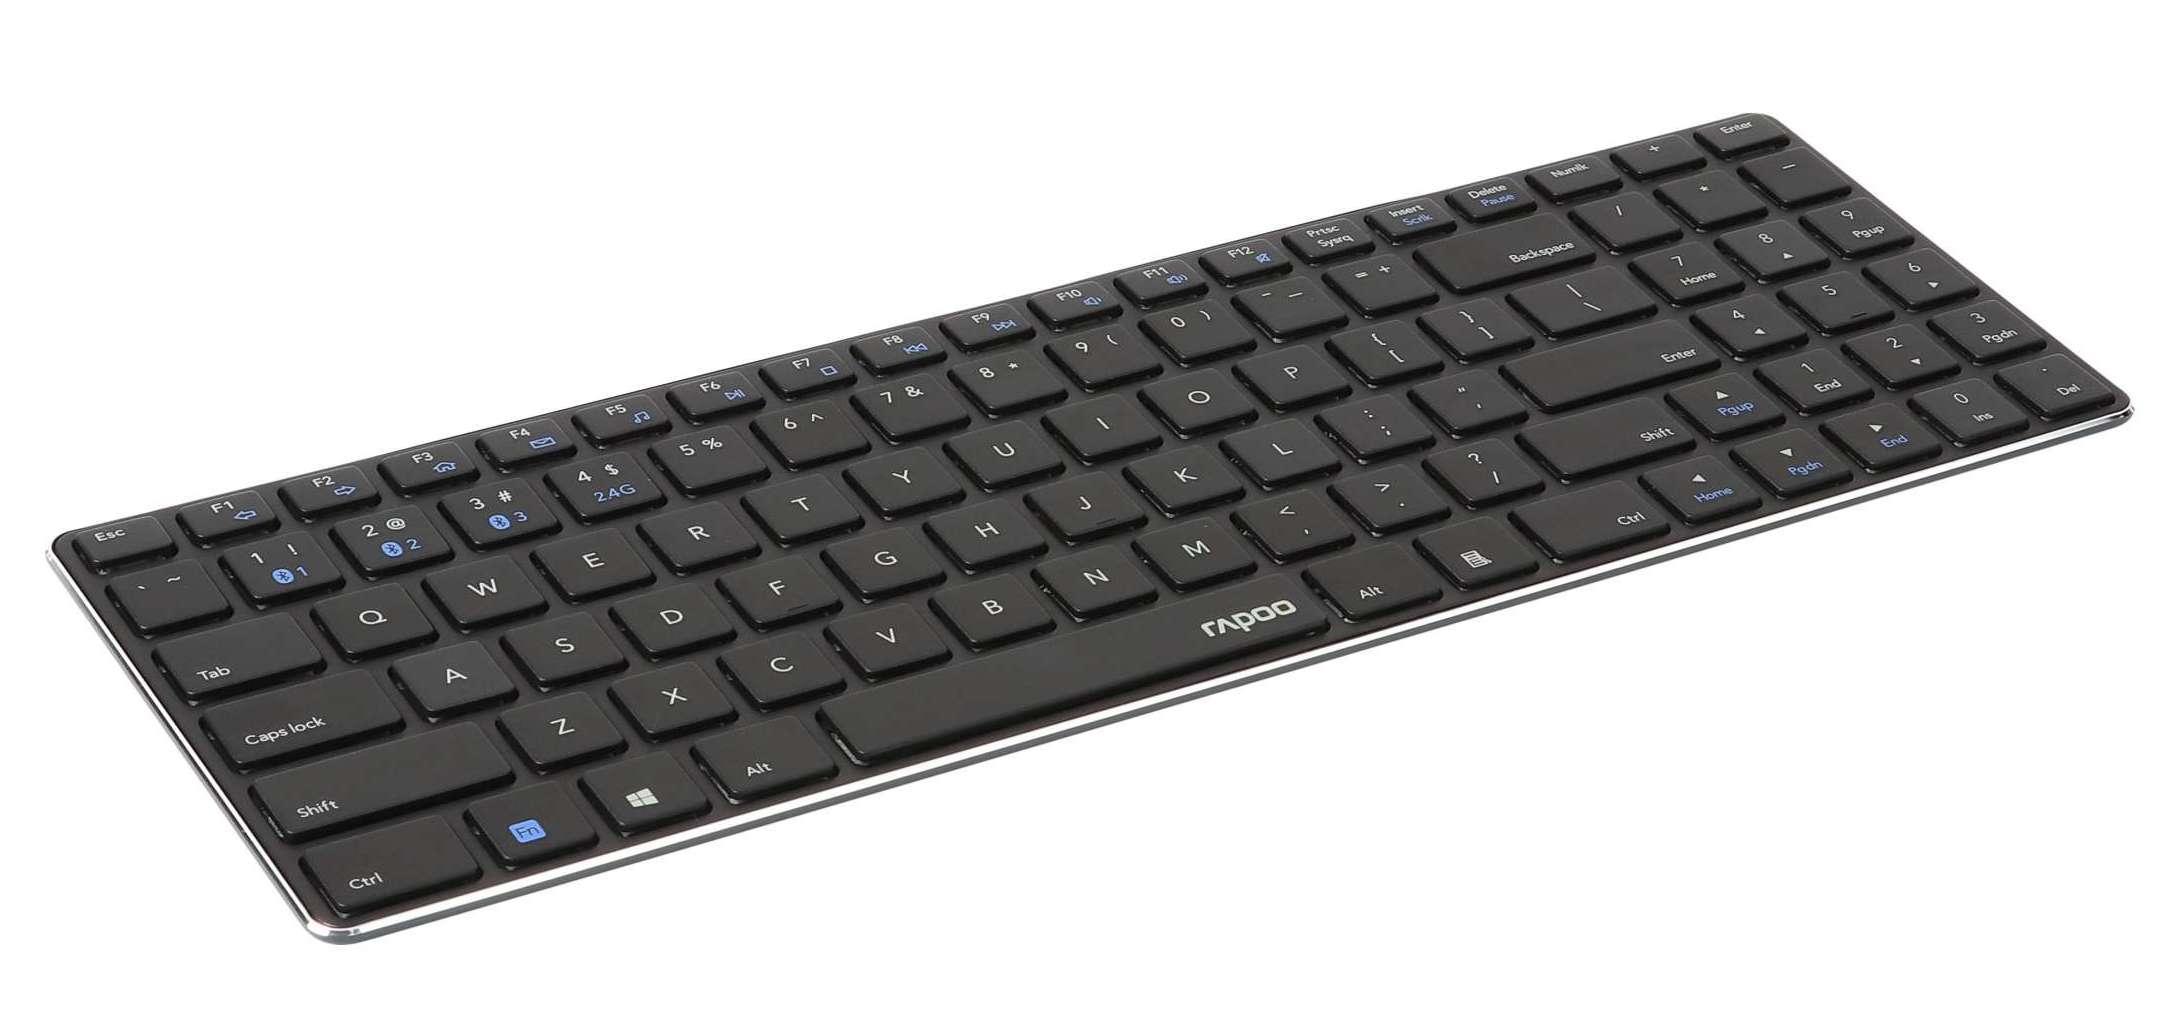  Rapoo E9100M Qwerty - Le meilleur clavier fin à petit prix